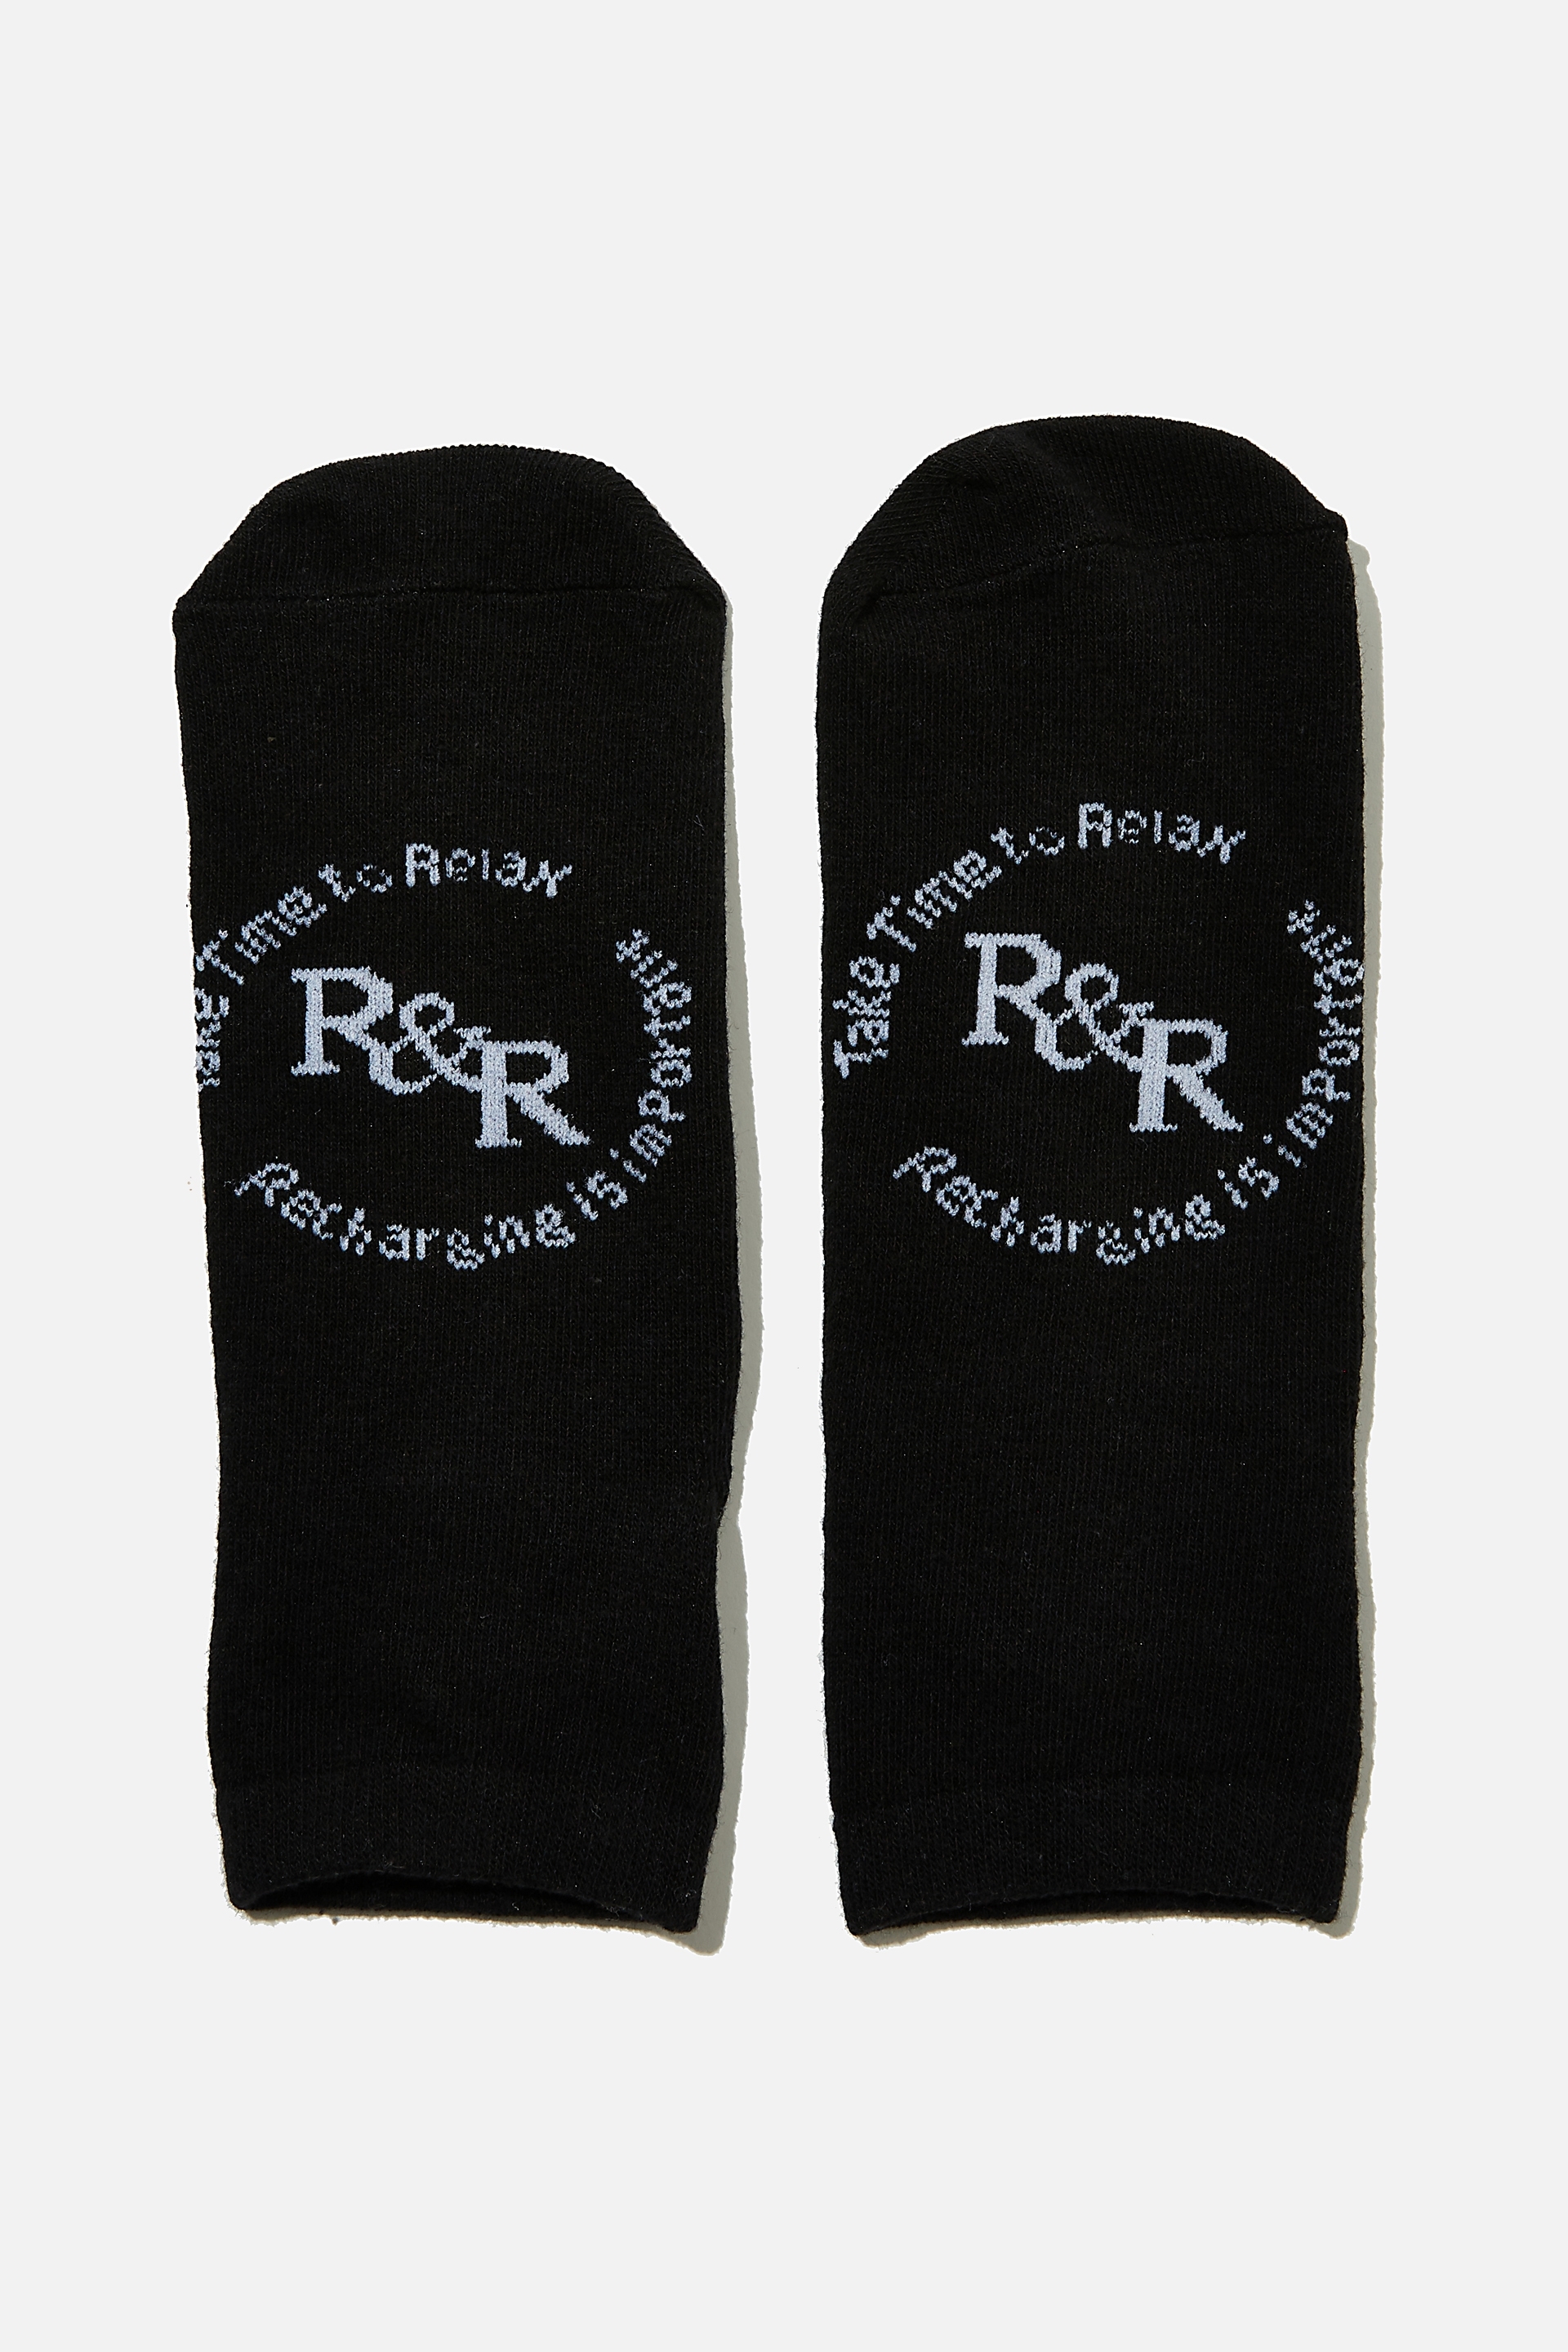 Factorie - Anklet Original Sock - R & r black